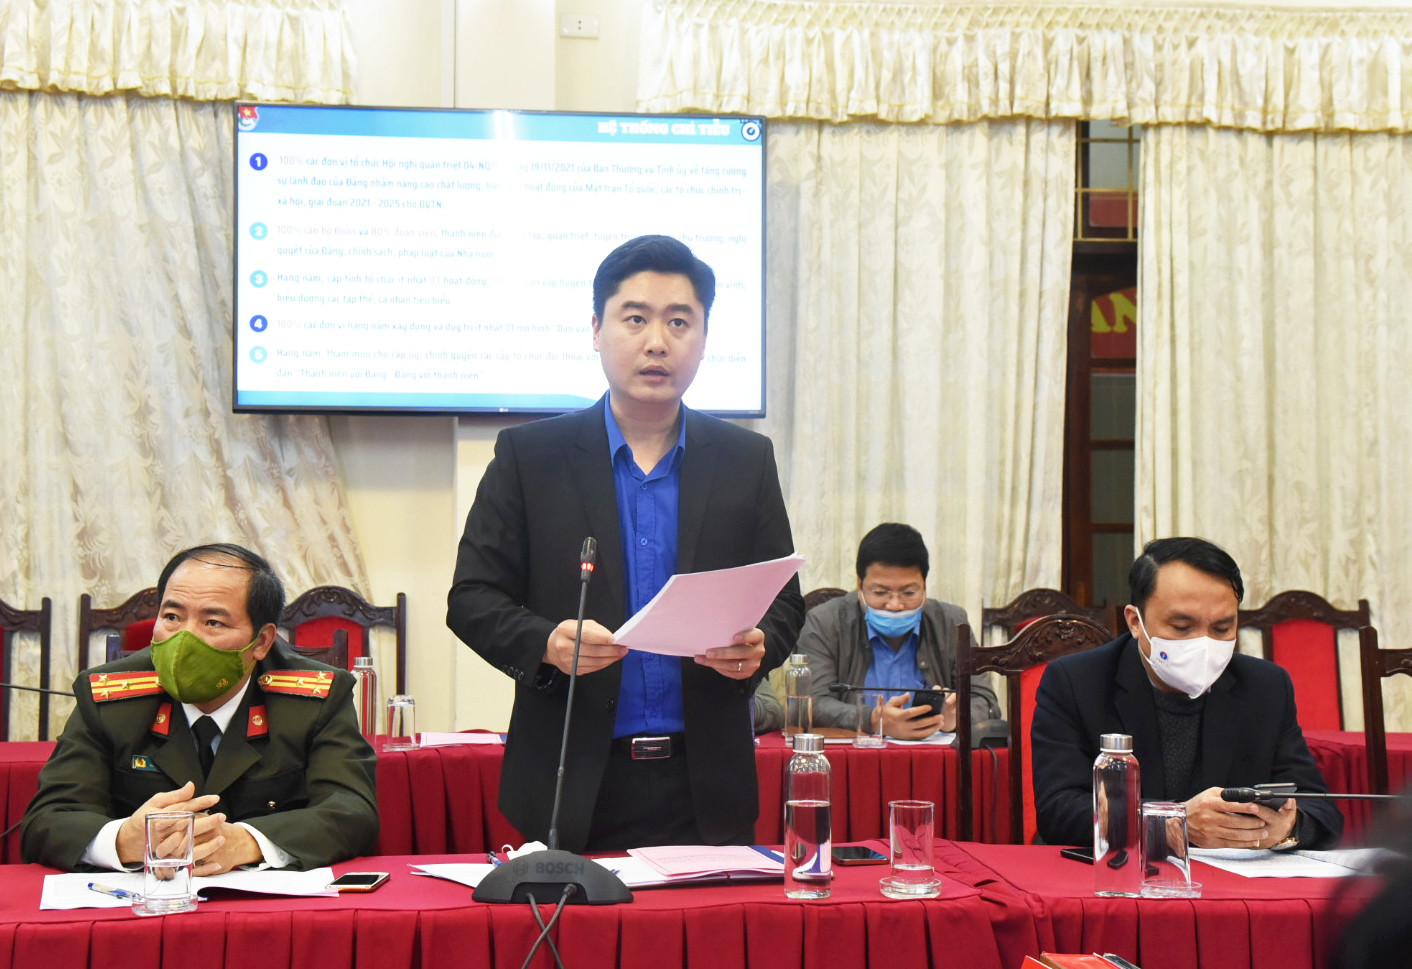 Đồng chí Lê Văn Lương - Bí thư Tỉnh đoàn trình bày hệ thống chỉ tiêu nhằm cụ thể hóa Nghị quyết 04. Ảnh: TG